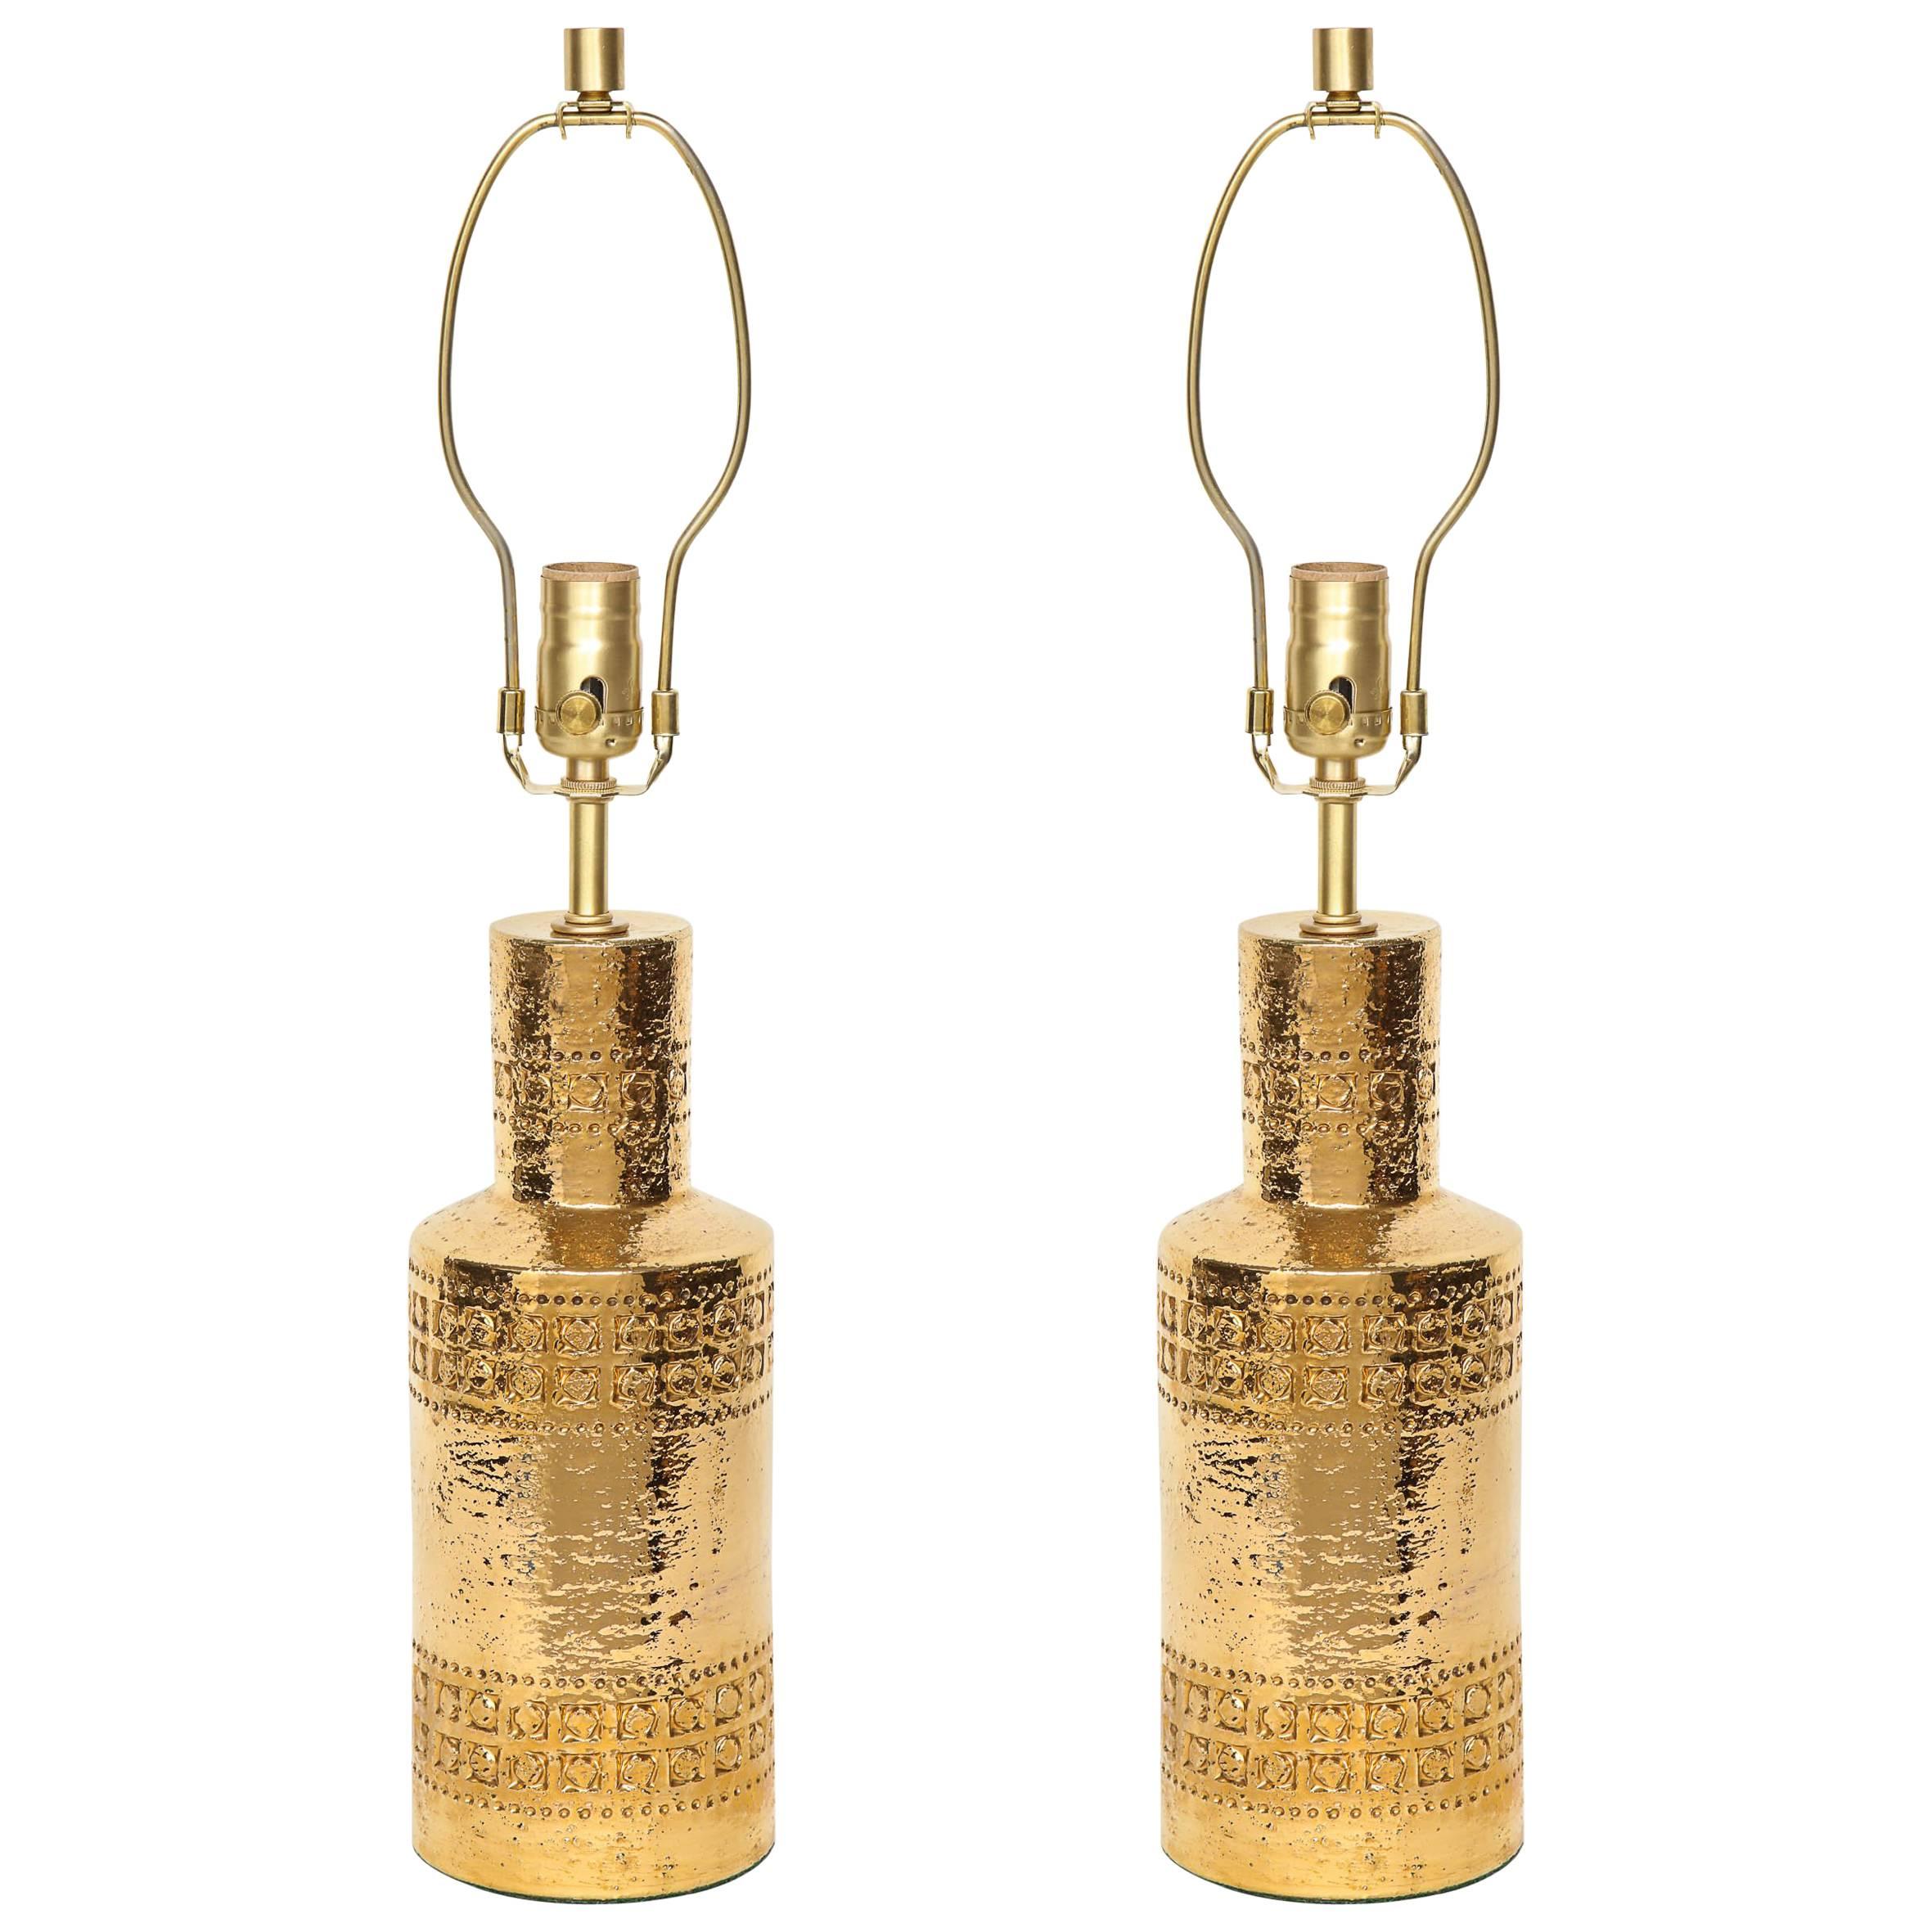 Bitossi-Lampen aus 22-karätigem Gold mit Intarsien